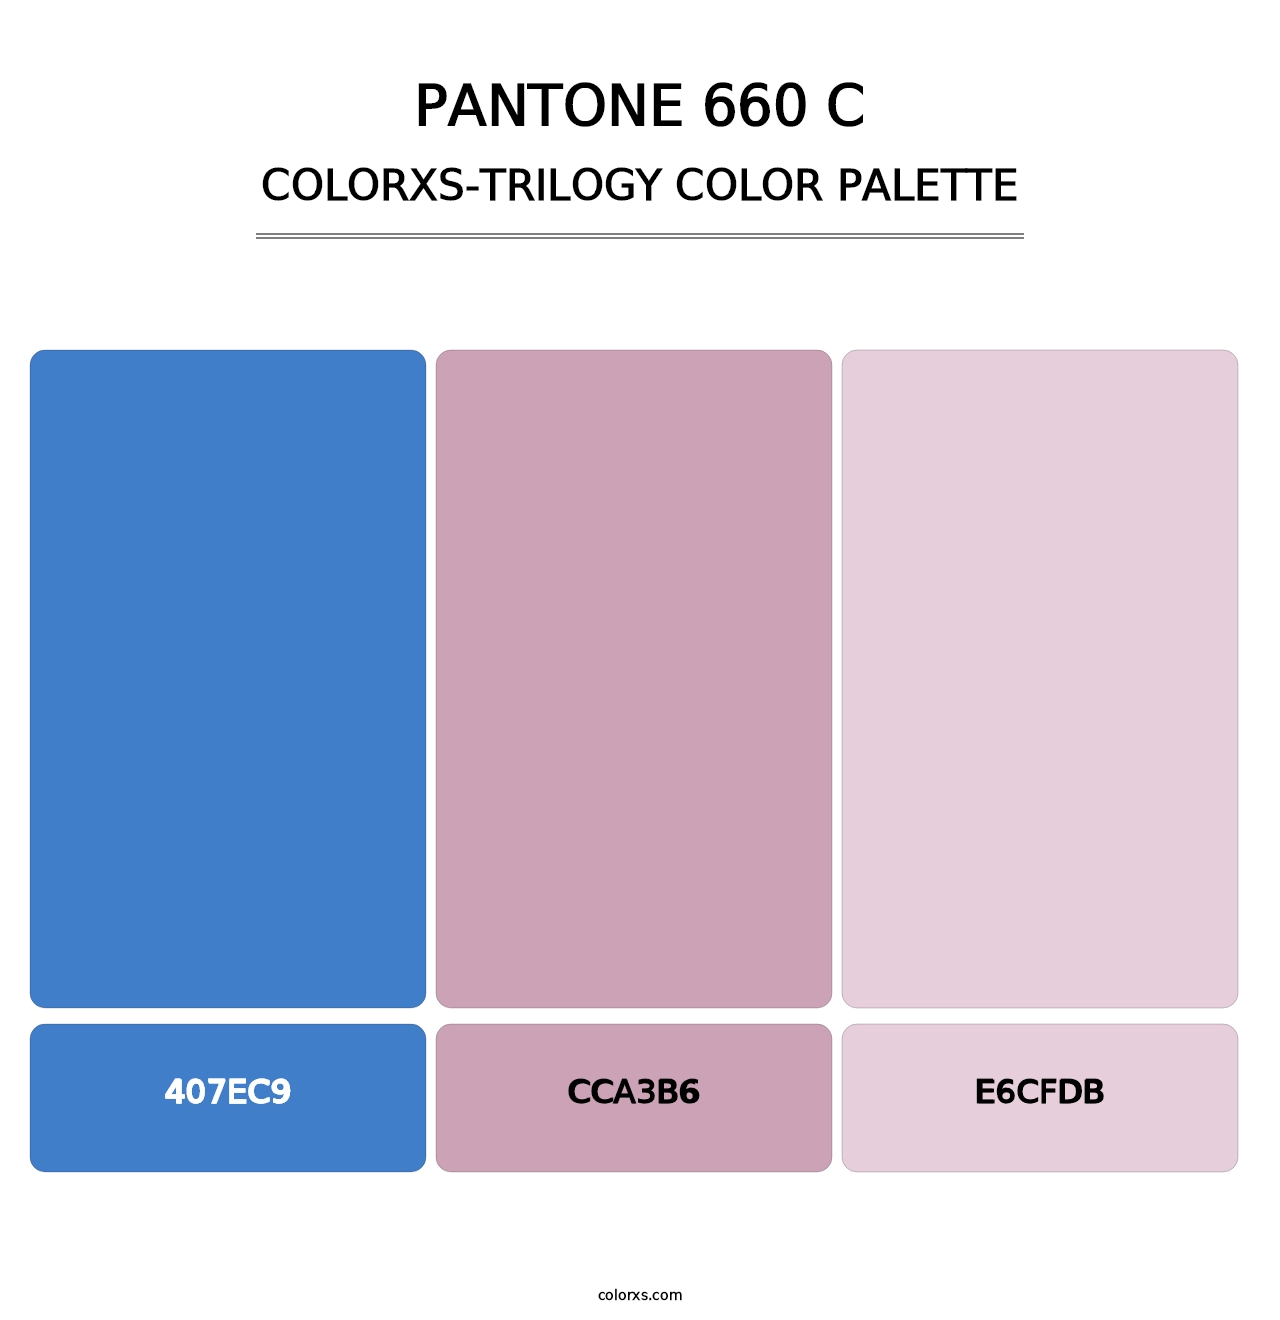 PANTONE 660 C - Colorxs Trilogy Palette